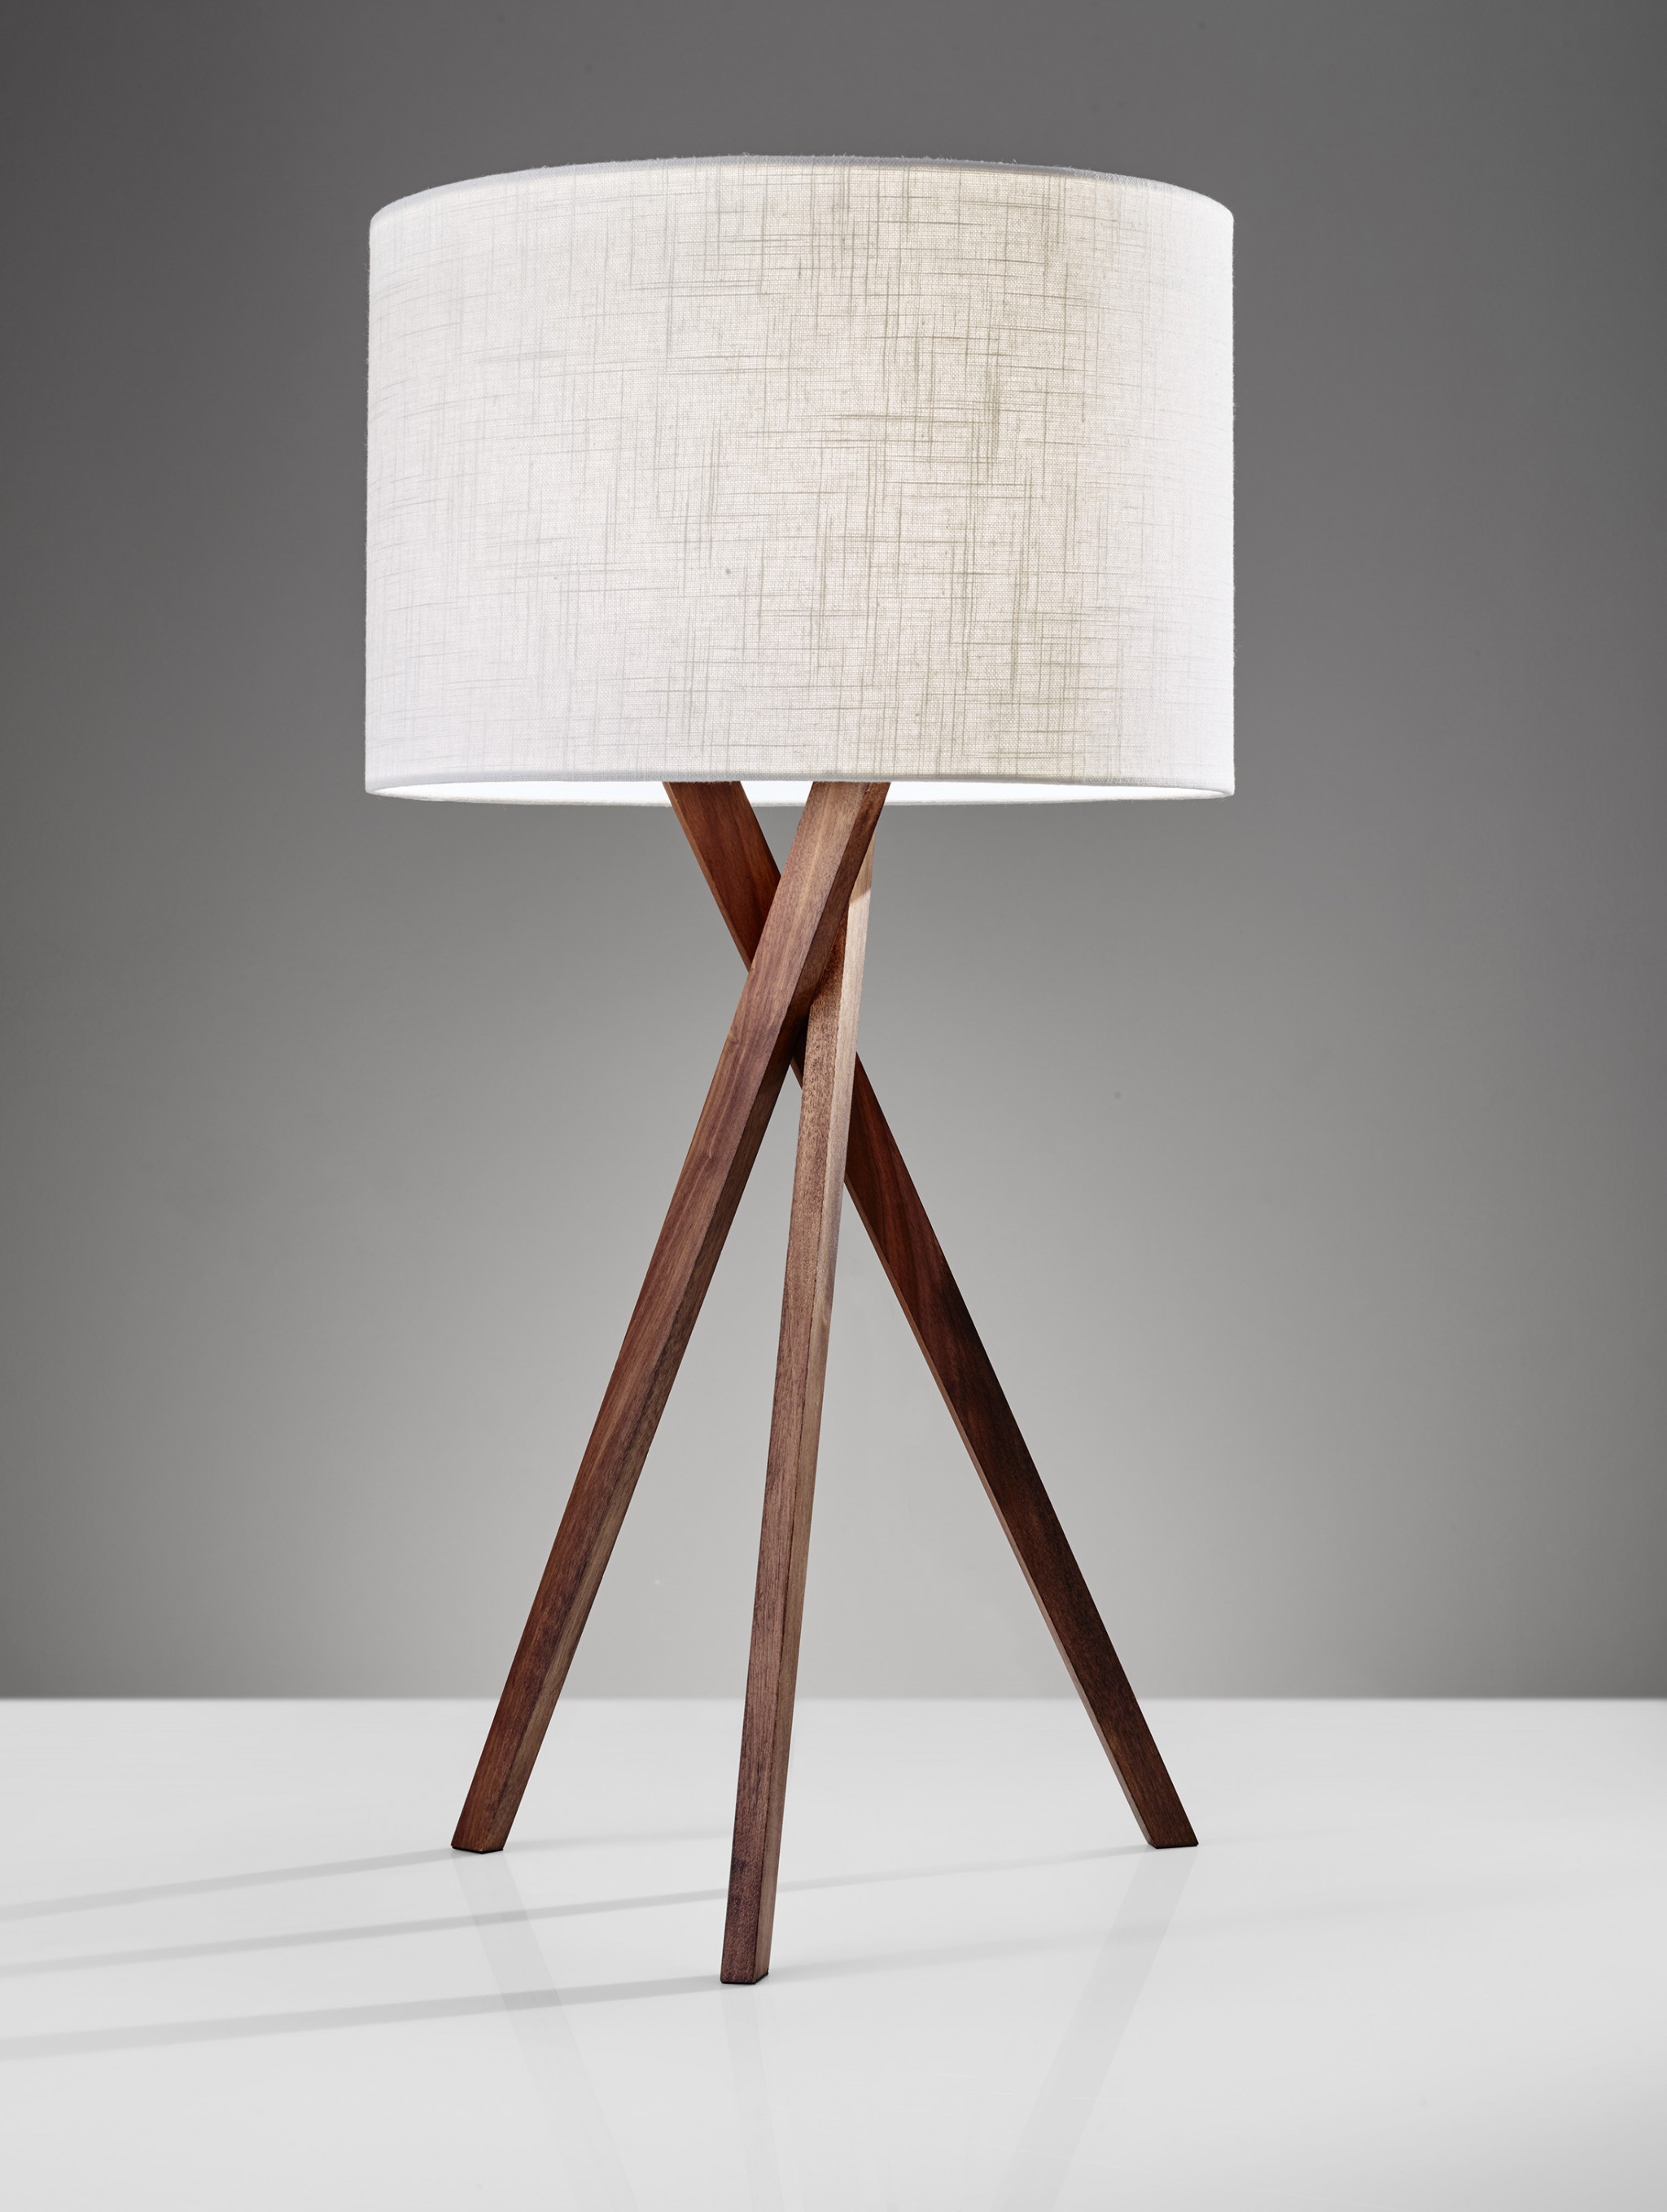 15" X 15" X 29.5" Walnut Wood Table Lamp